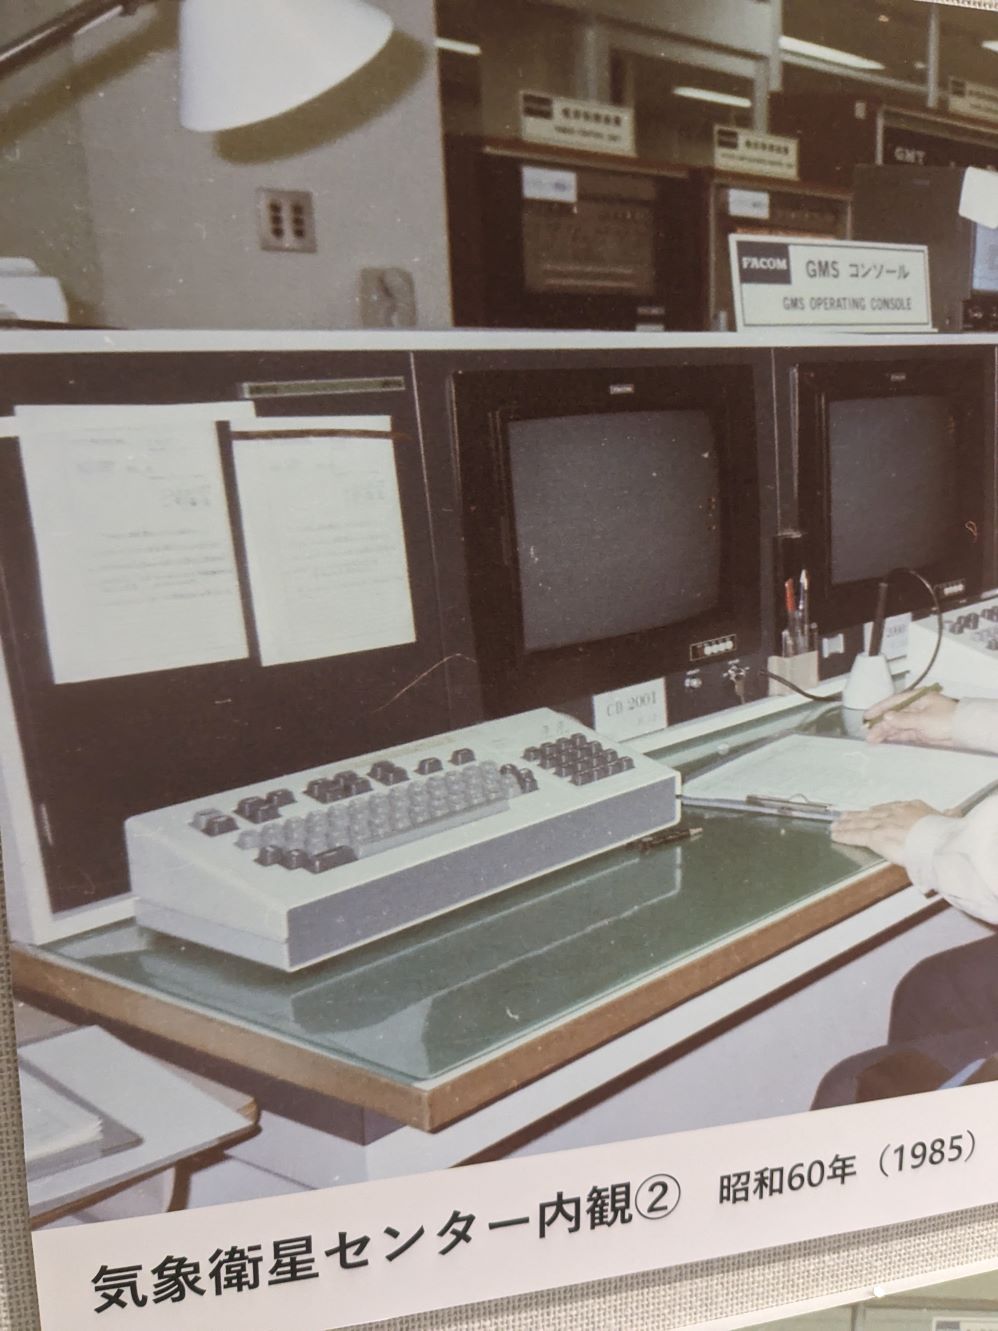 気象衛星センターの1985年当時の内部設備